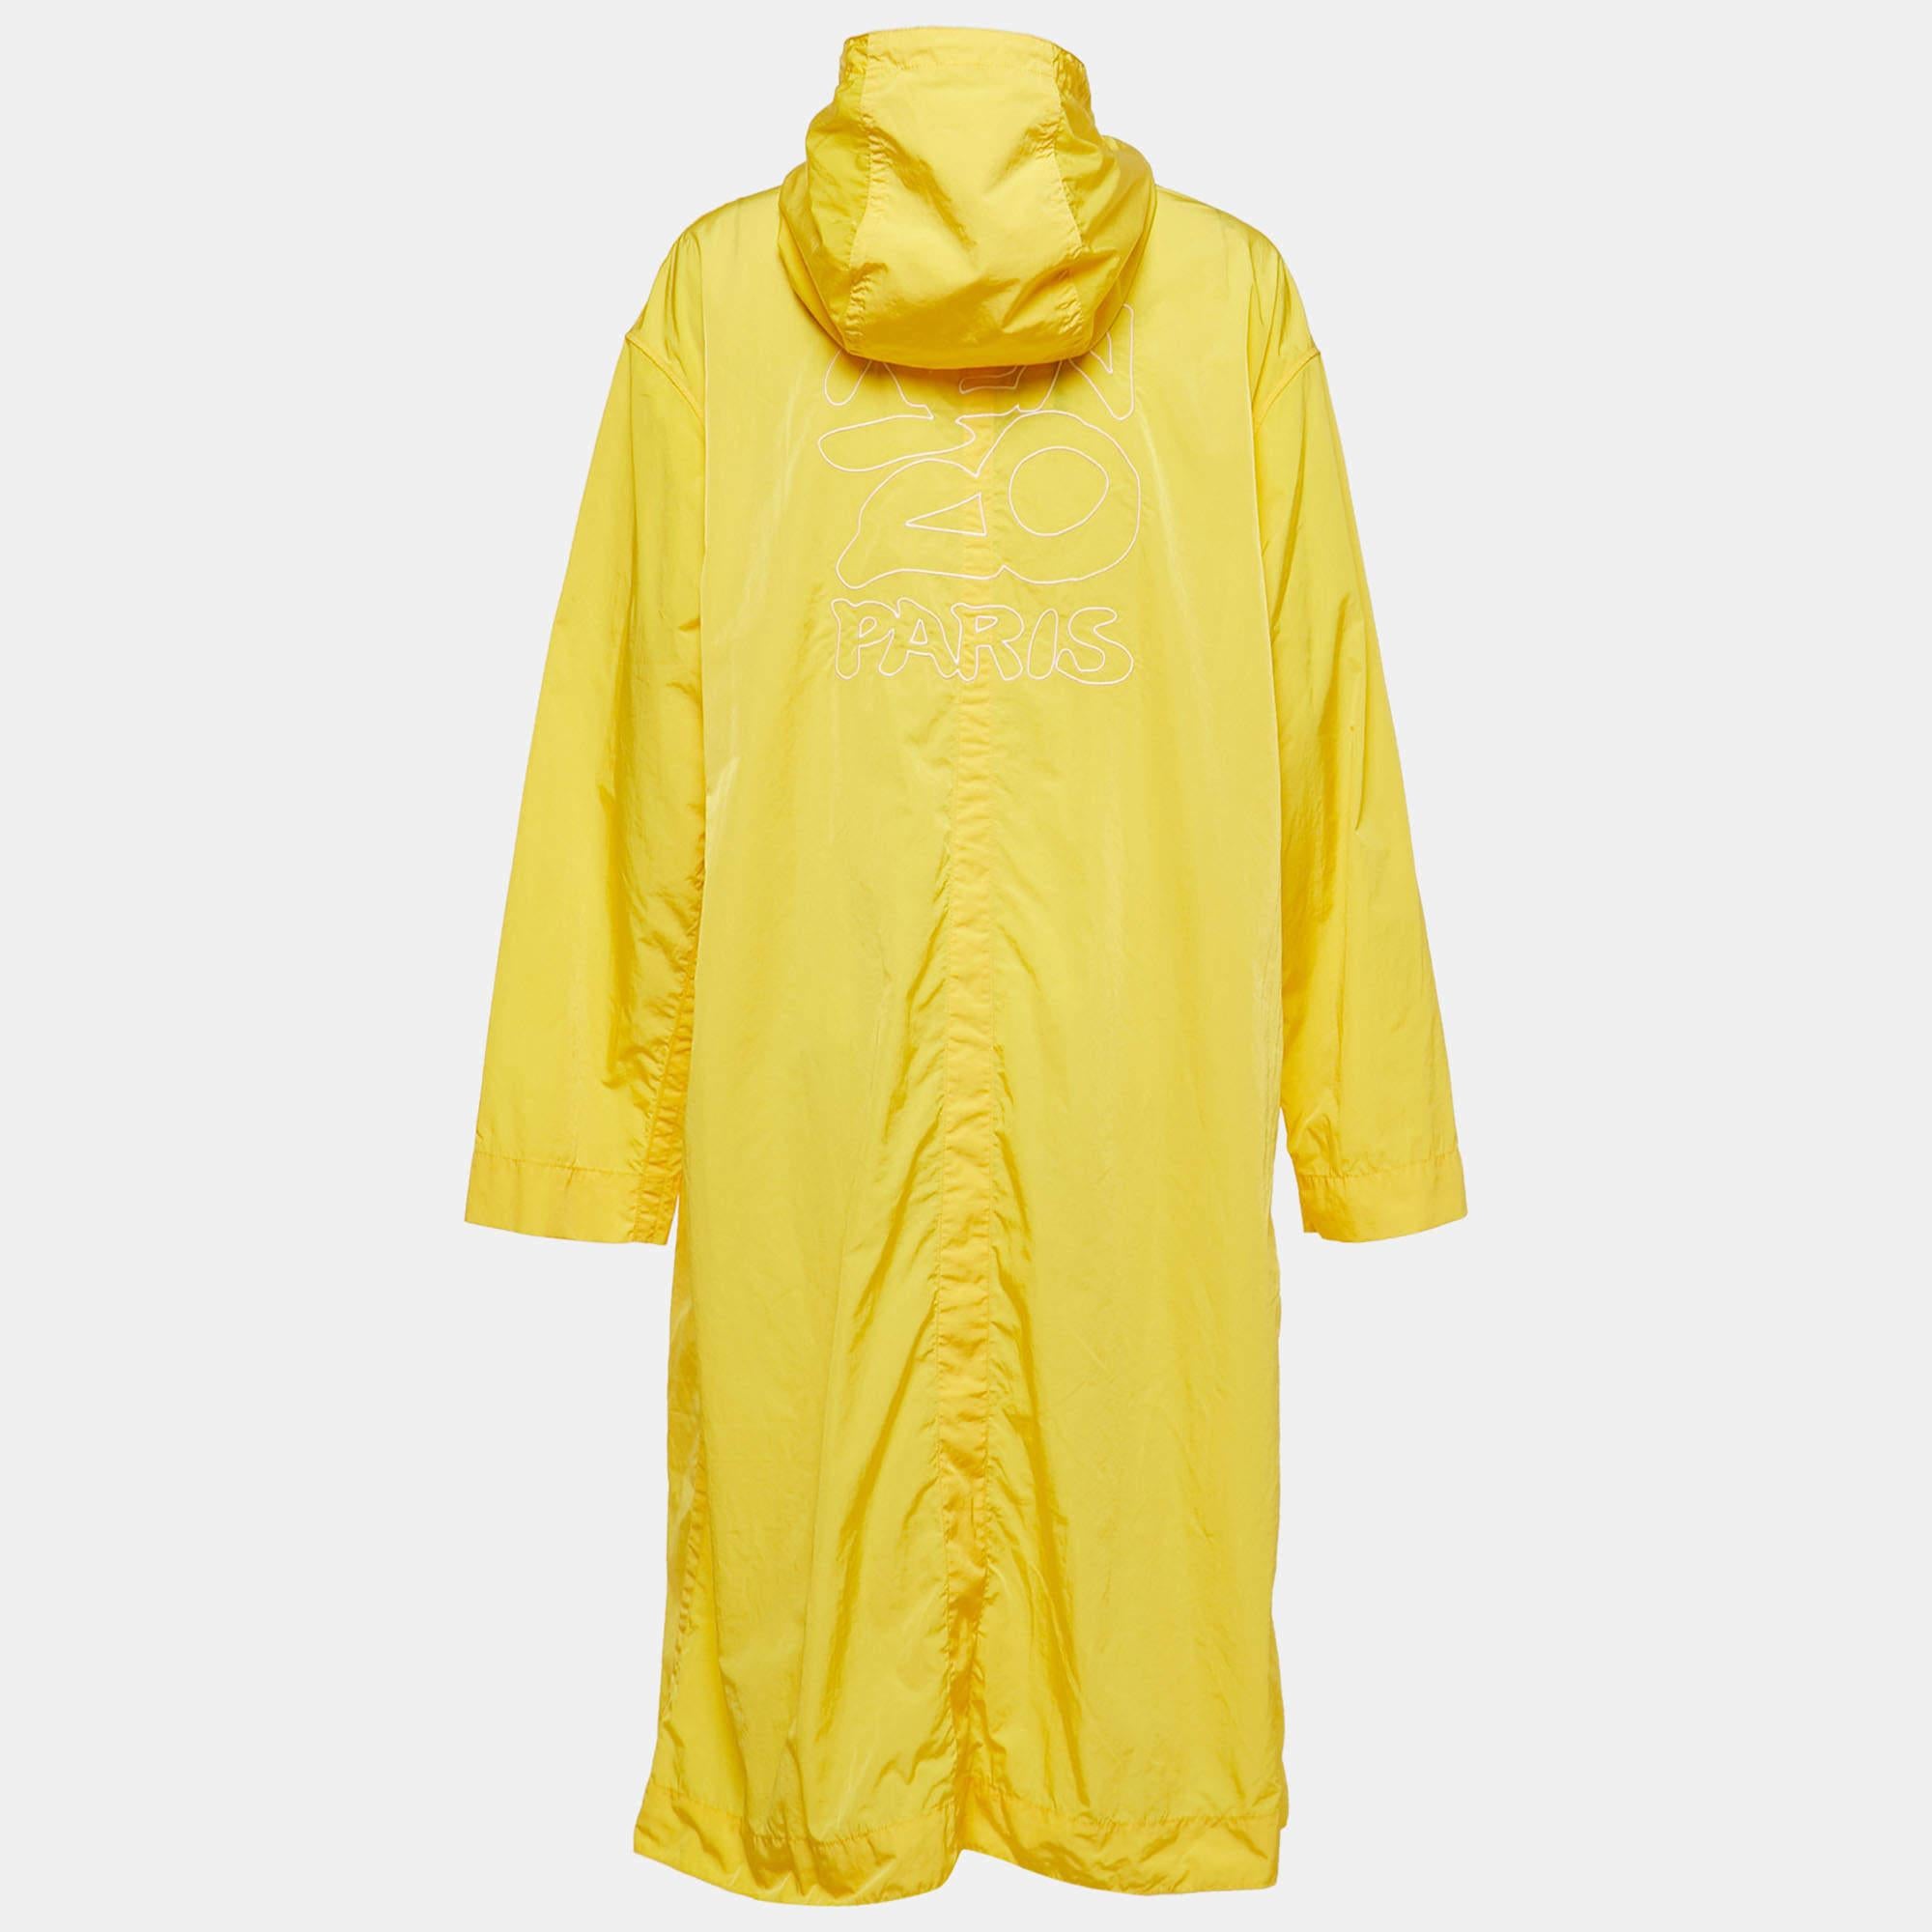 Der Regenmantel von Kenzo ist ein stilvolles und funktionelles Oberbekleidungsstück. Dieser Regenmantel aus strapazierfähigem Nylon hat eine leuchtend gelbe Farbe, die an regnerischen Tagen für einen Farbtupfer sorgt. Sie hat einen Knopfverschluss